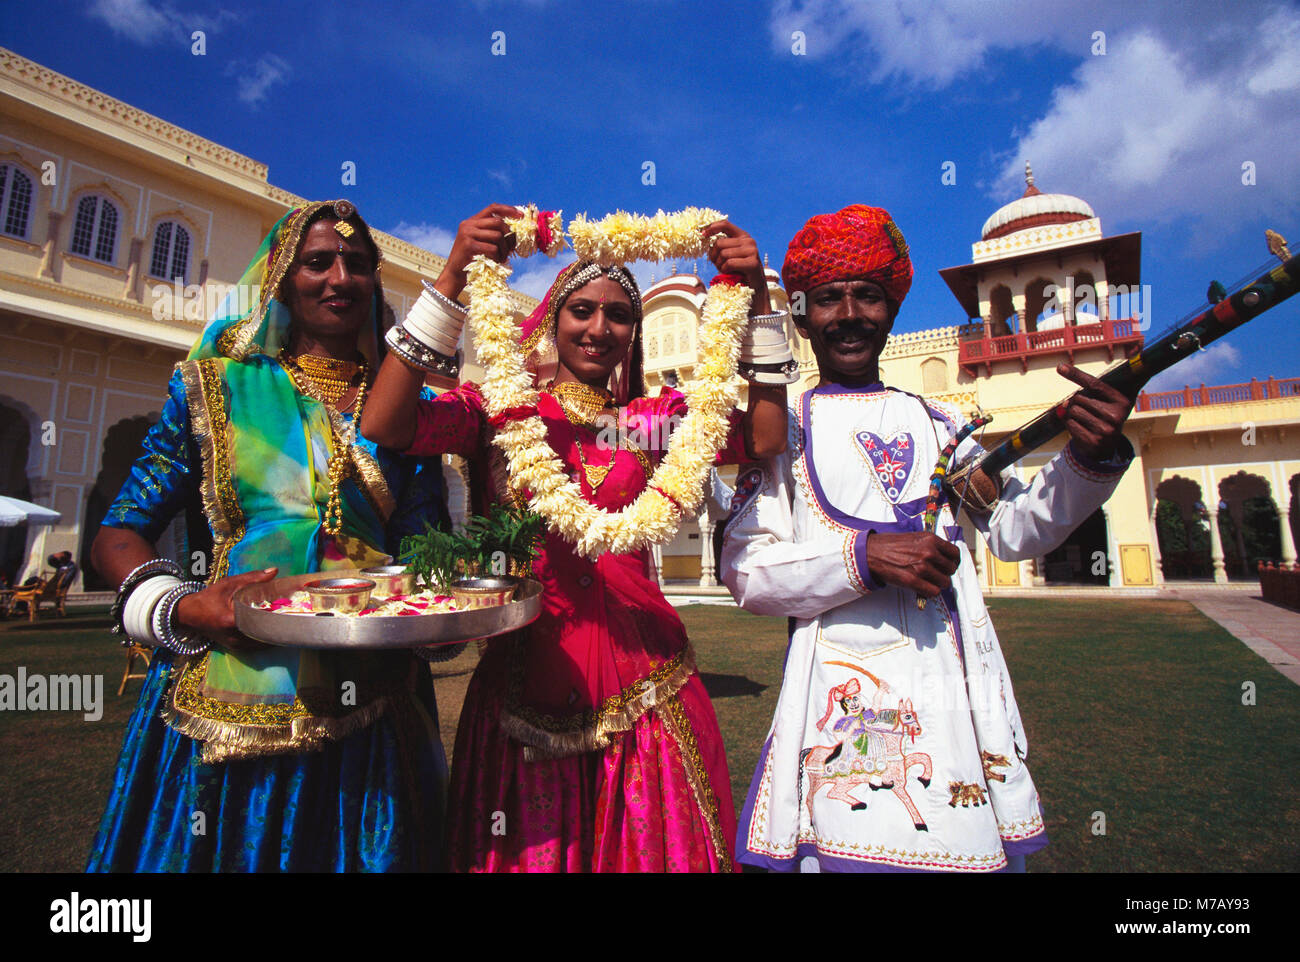 Portrait of a Mid adult man avec deux jeunes femmes accueil, Jaipur, Rajasthan, Inde Banque D'Images